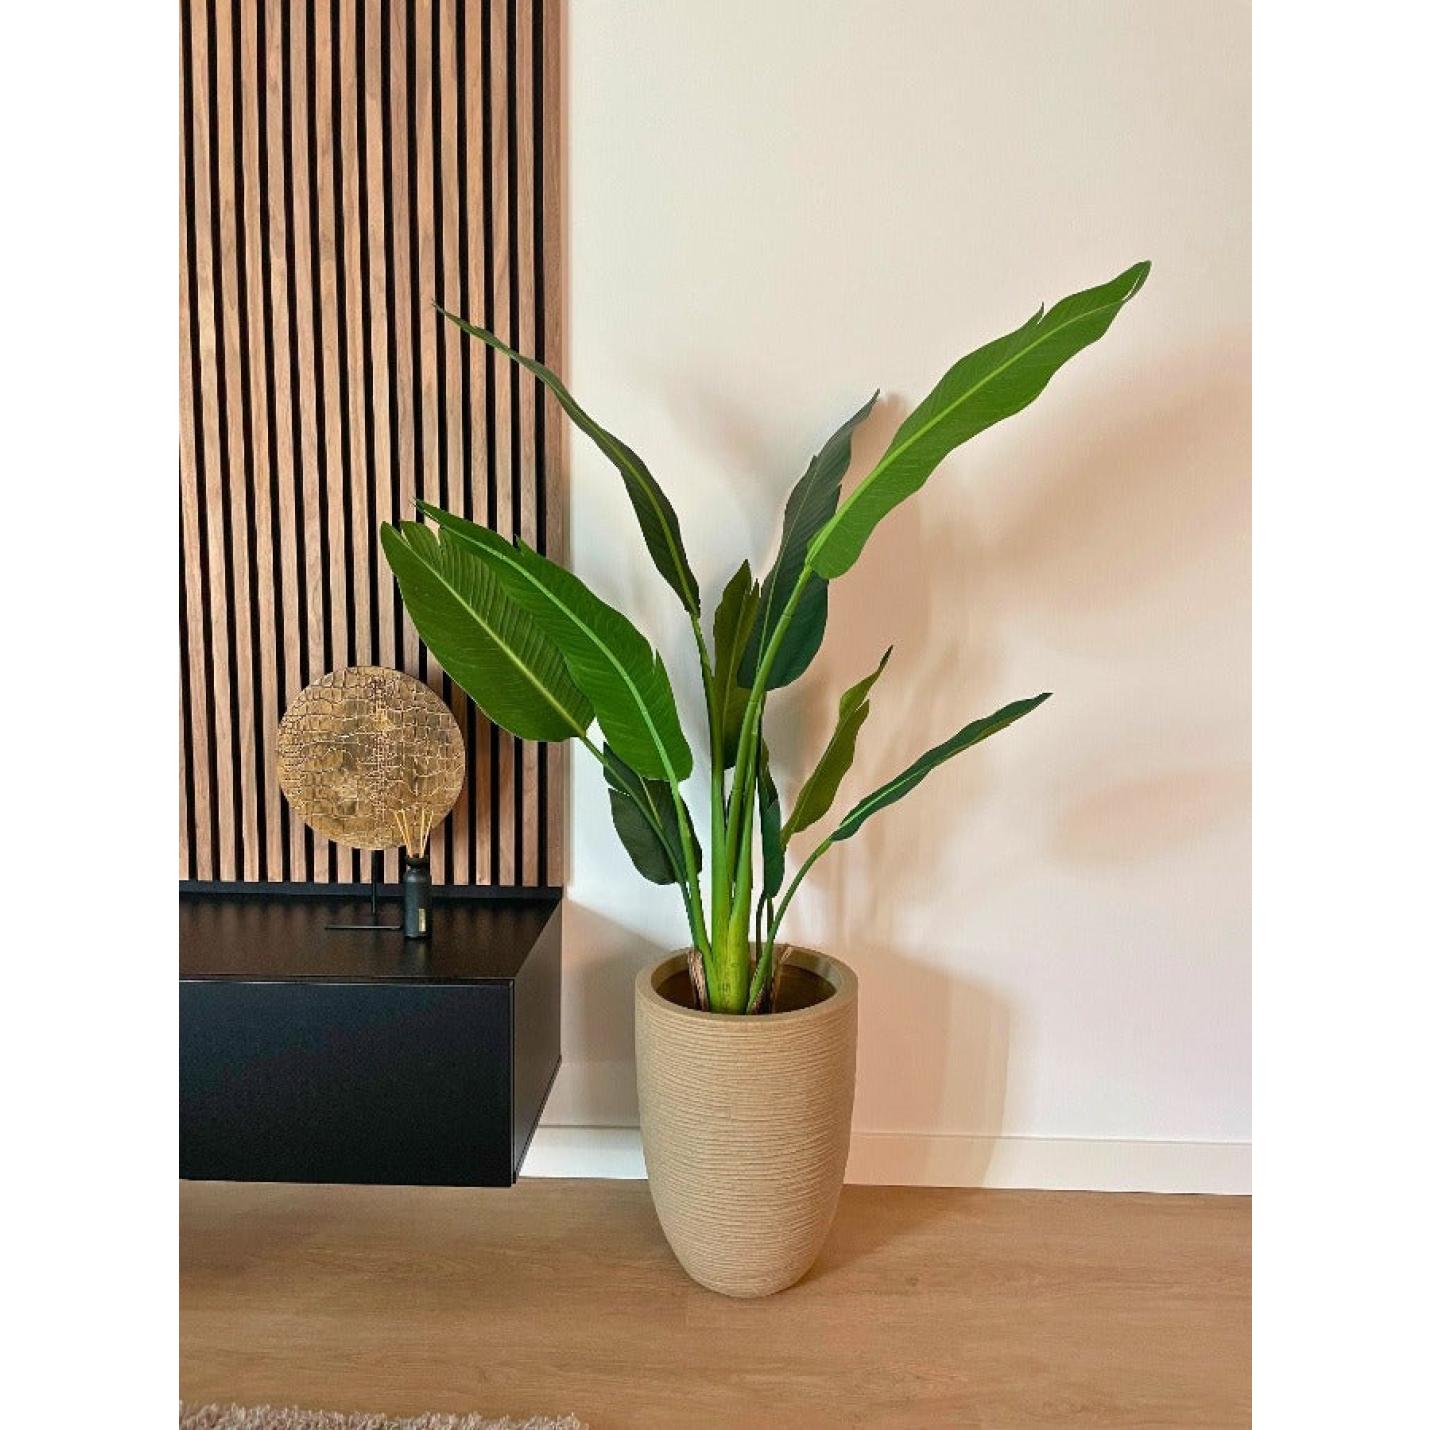 Strelitzia-XL-Kunstplant-150-cm-kunstplanten-nepplanten-kantoorplant-kamerplanten-zijdeplant-FloraCity-kunstplant-plantkunst-33